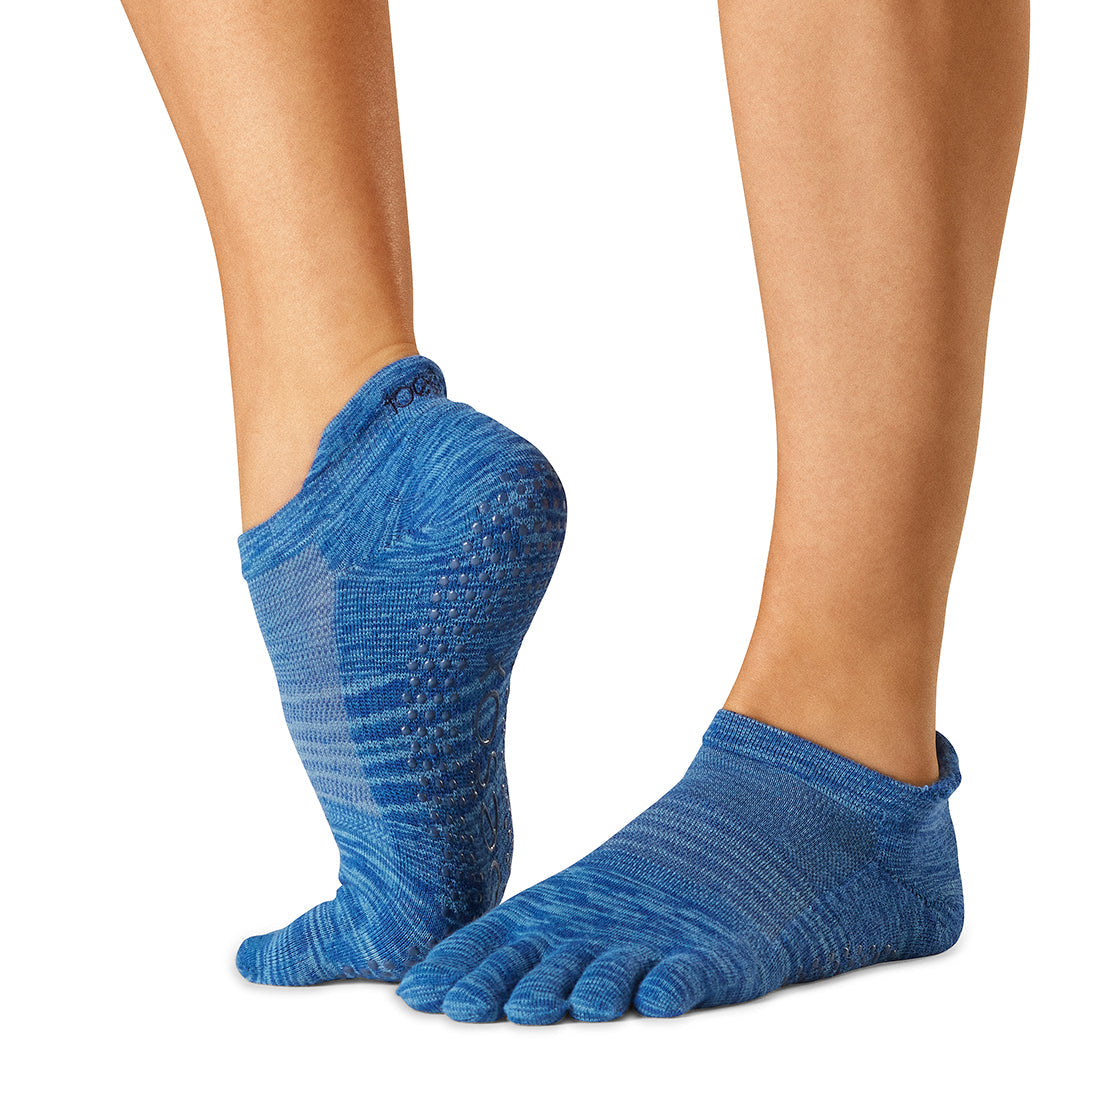 TOE SOX Full Toe Low Rise Grip Socks